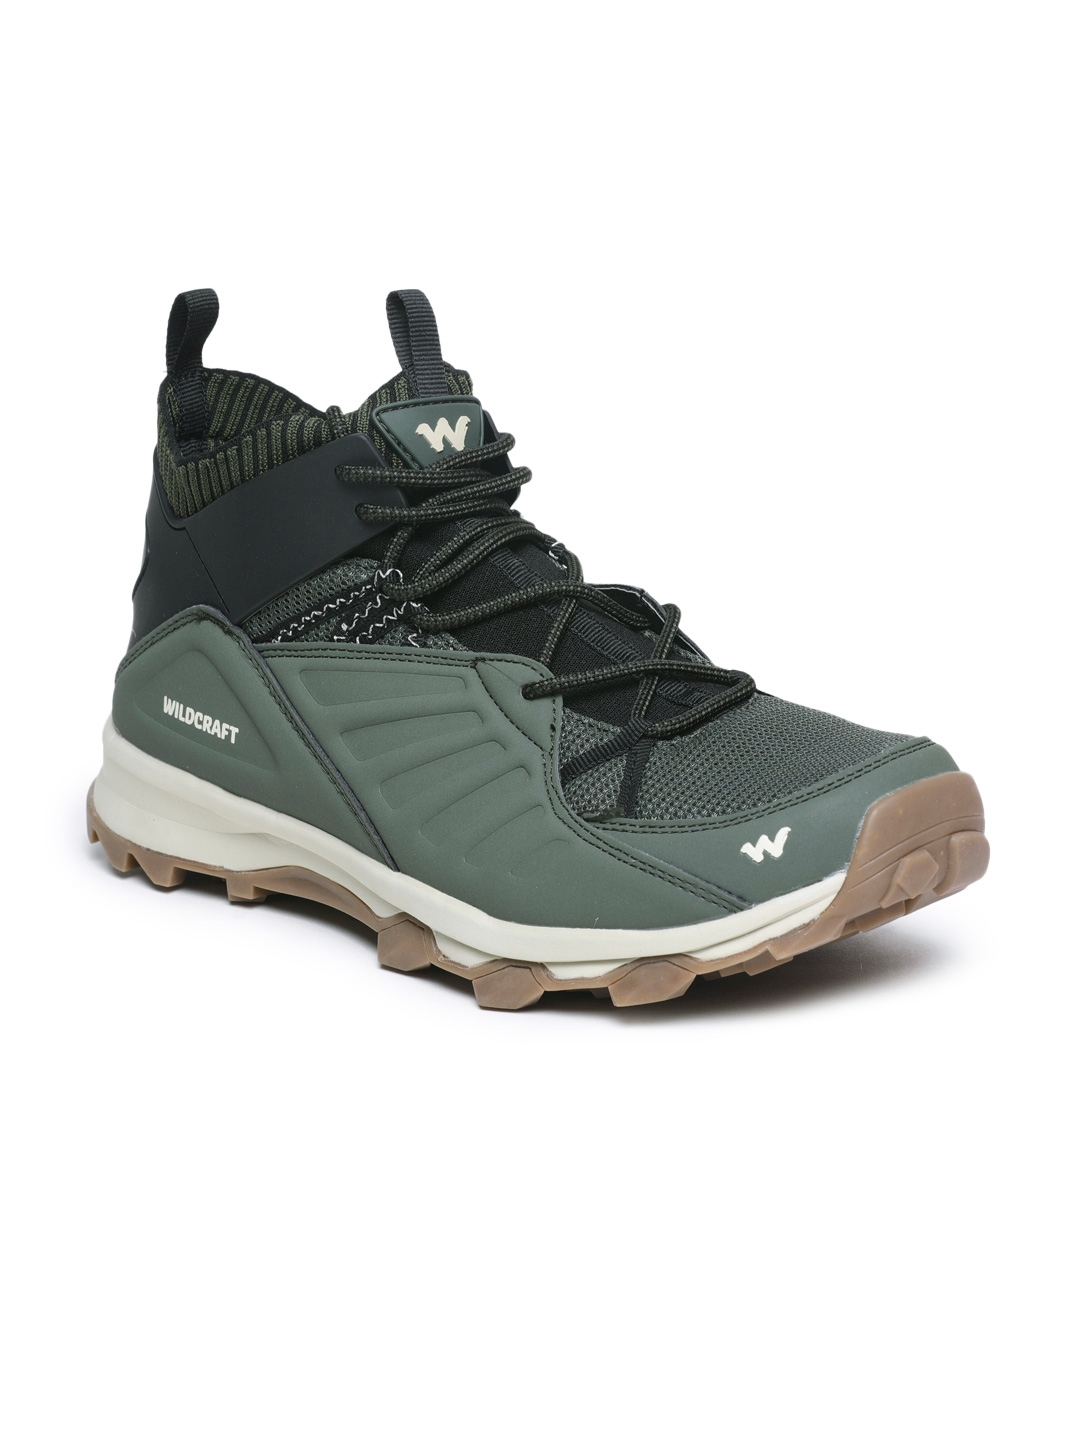 wildcraft men's trekking shoes